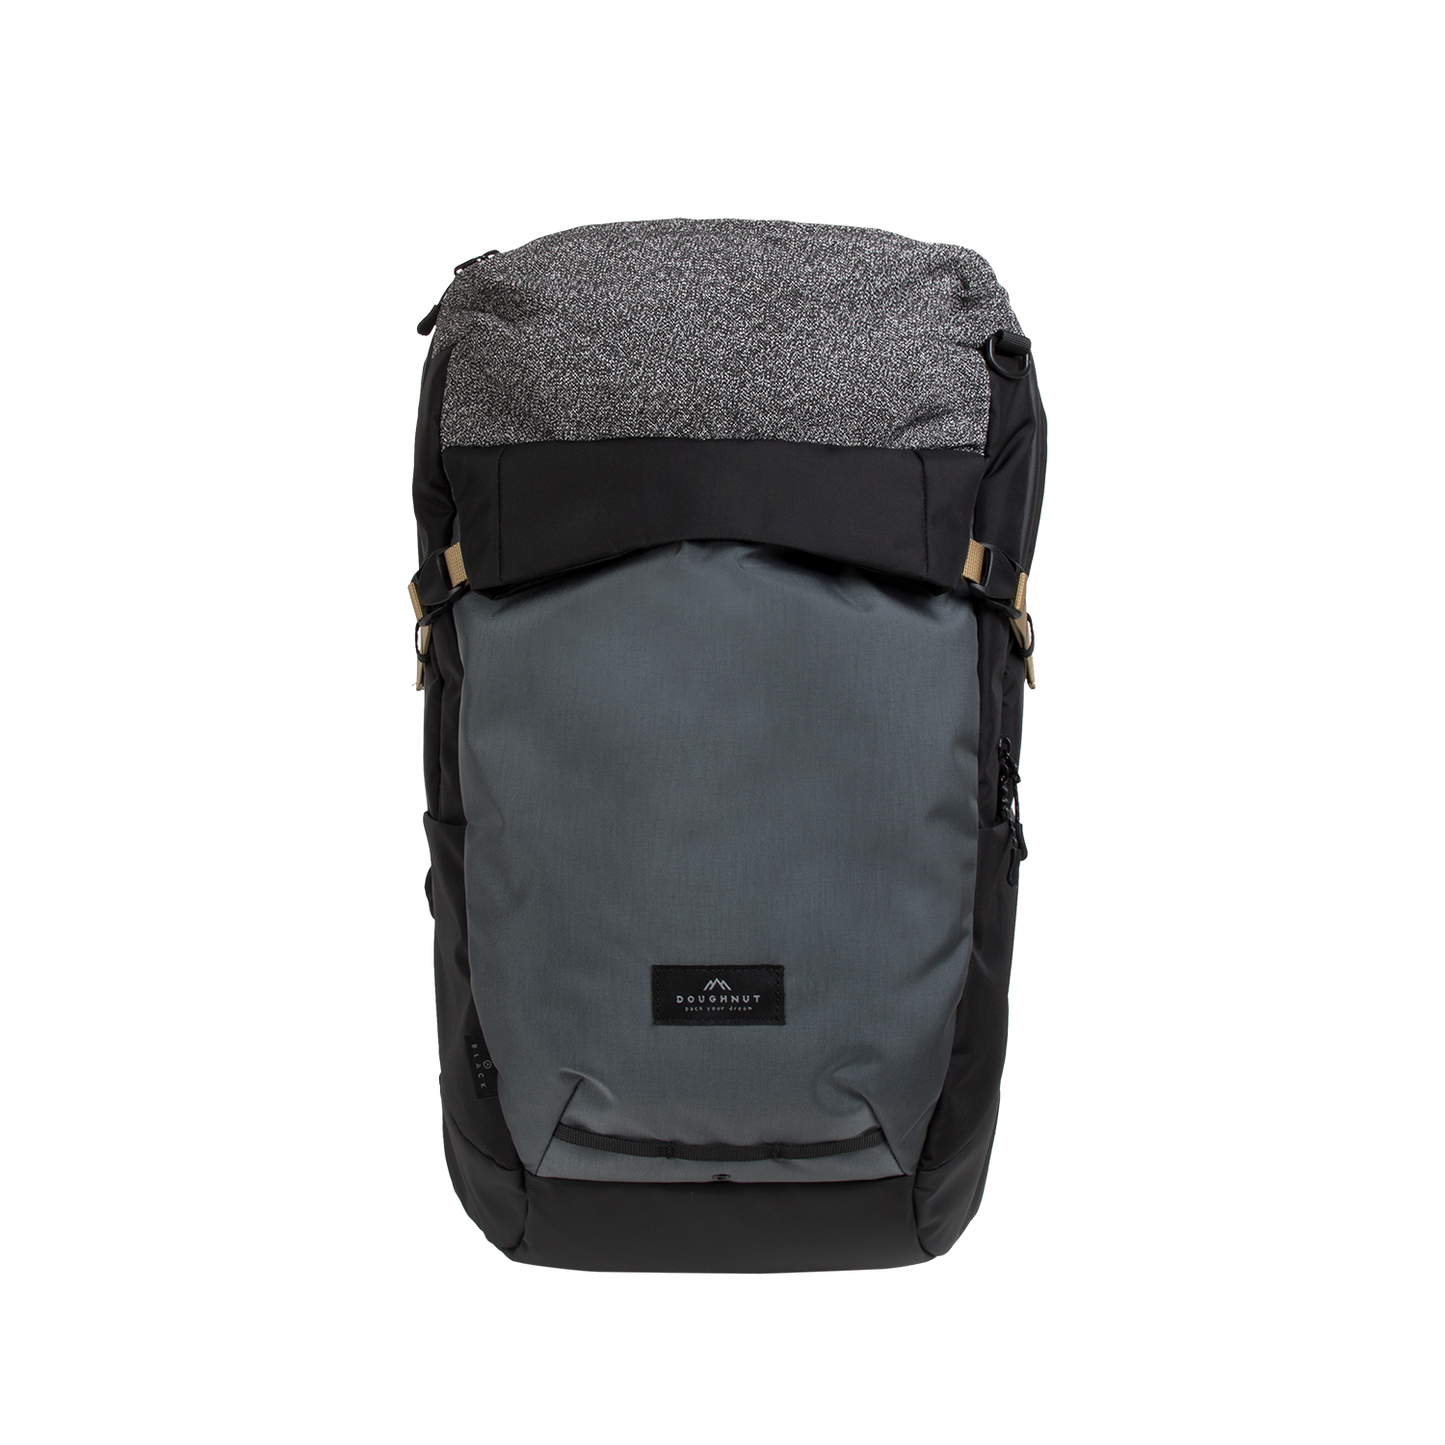 Astir Large Shield Series Black Backpack